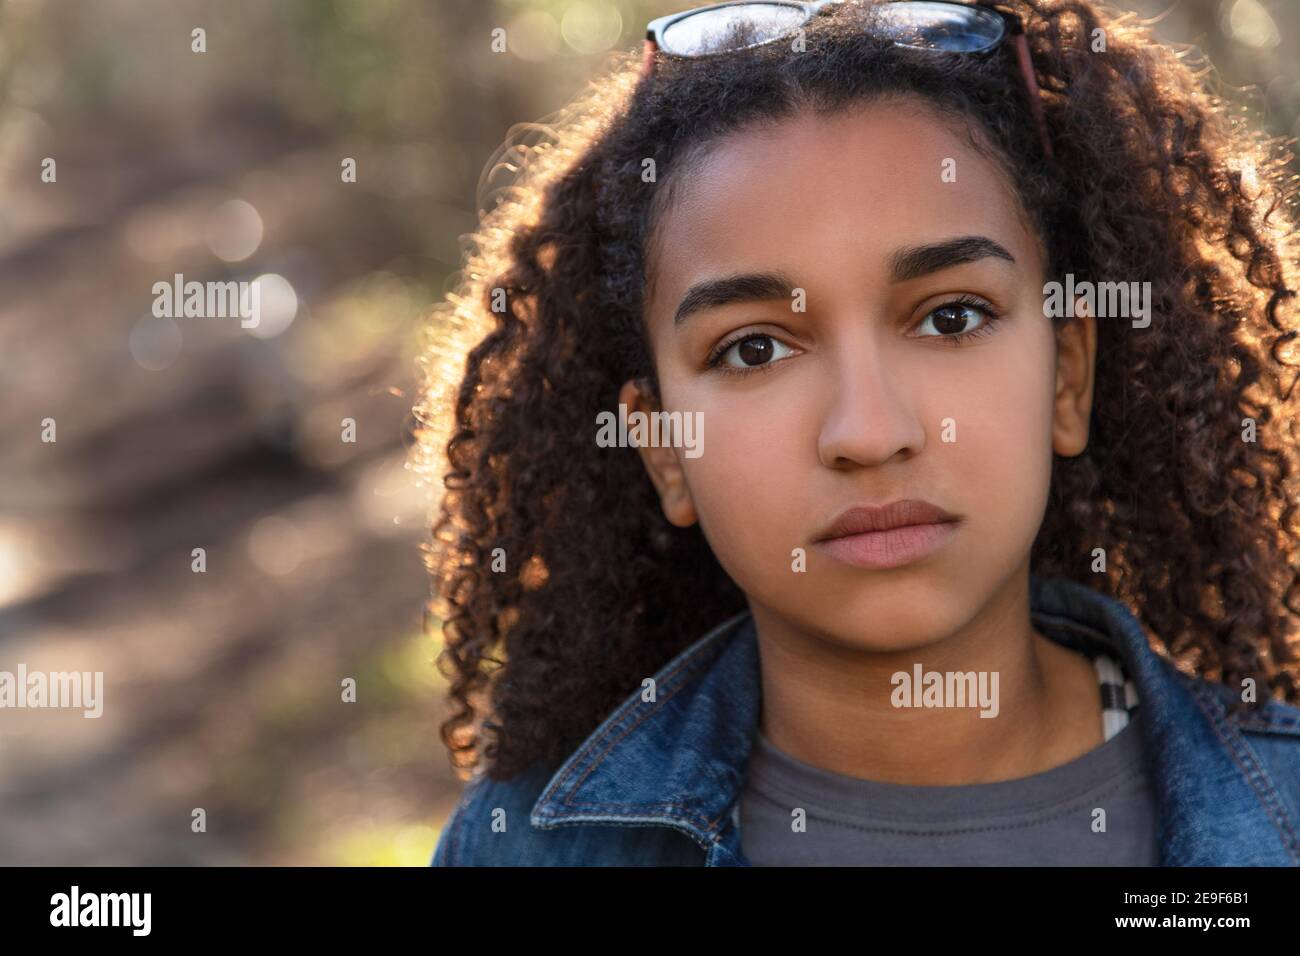 Outdoor-Porträt von schönen glücklich gemischte Rasse afroamerikanische Mädchen Teenager weibliches Kind, das nachdenklich oder traurig aussieht Stockfoto